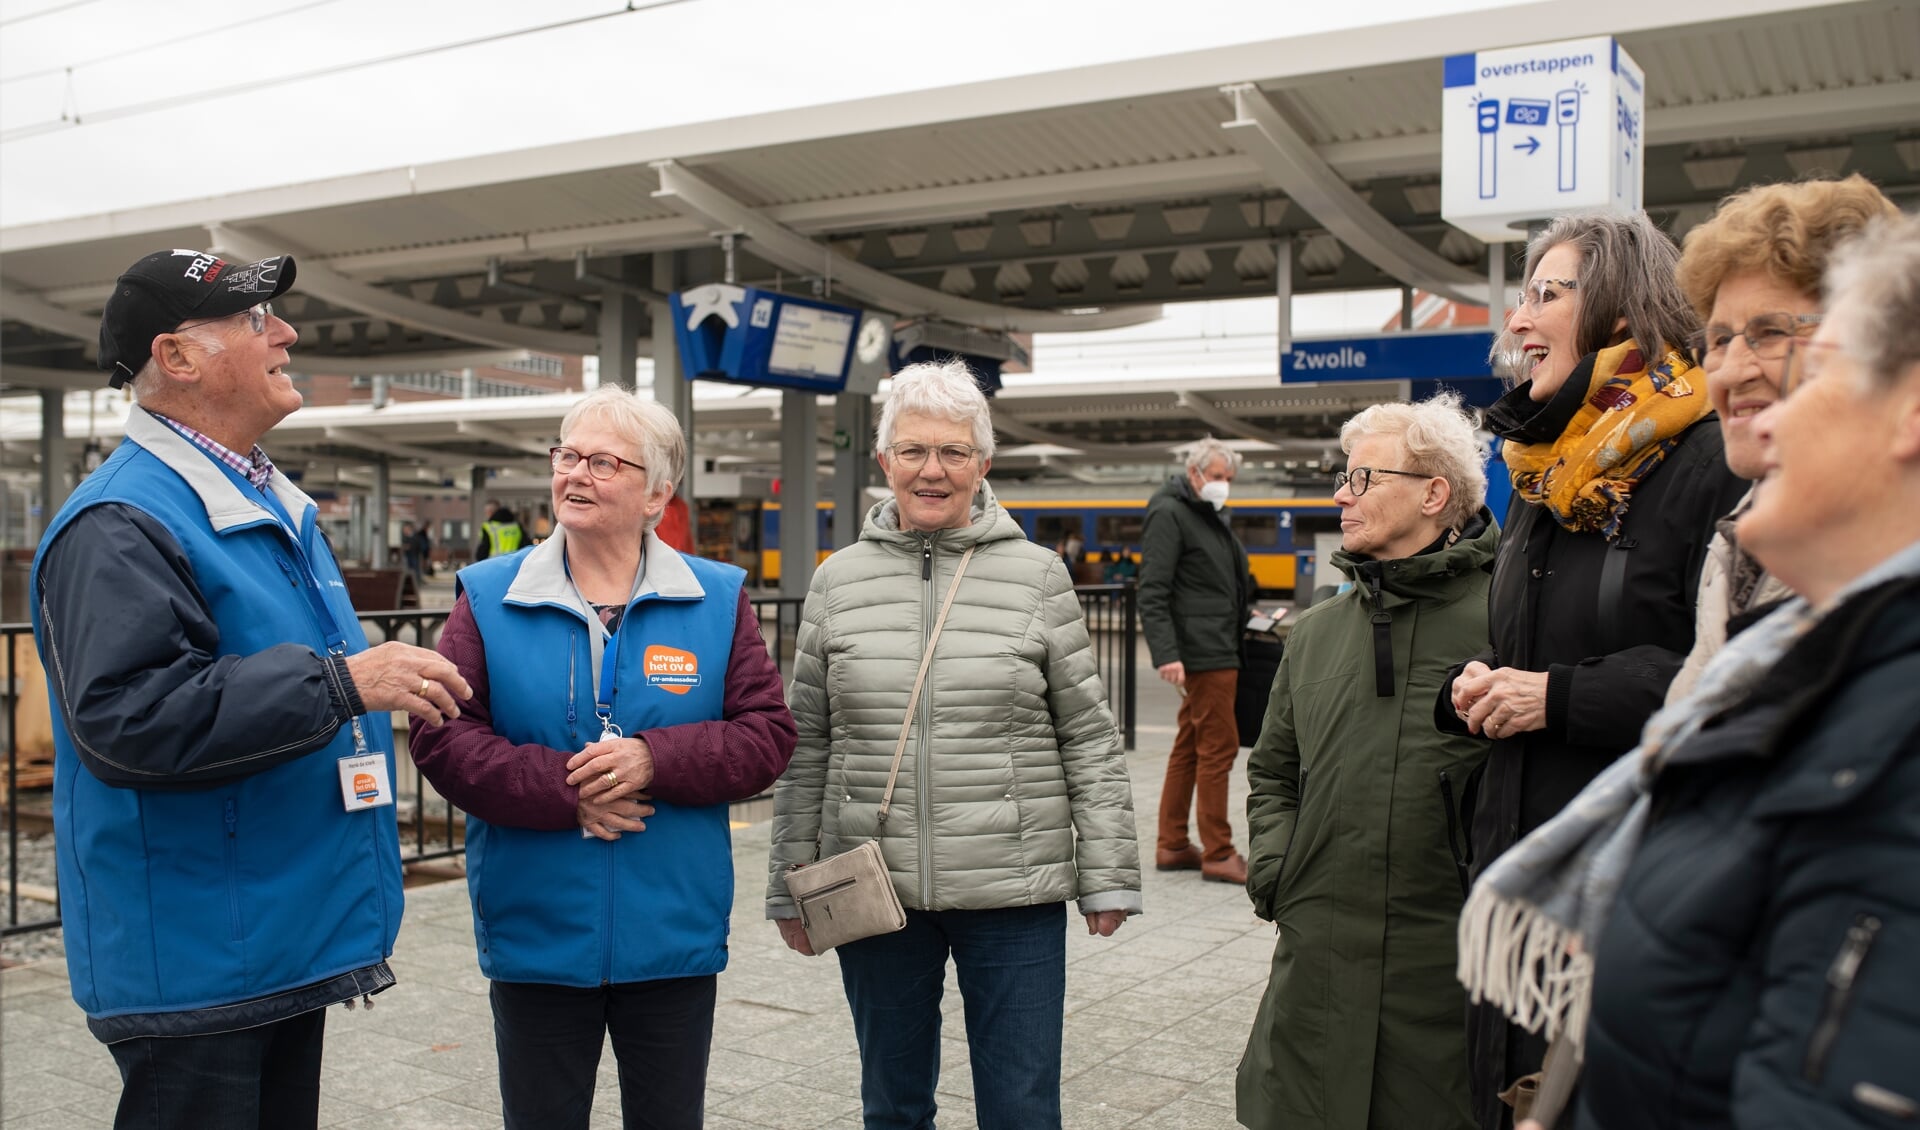 fotoreportage van OV Ambassadeurs iop en rond het station Zwolle